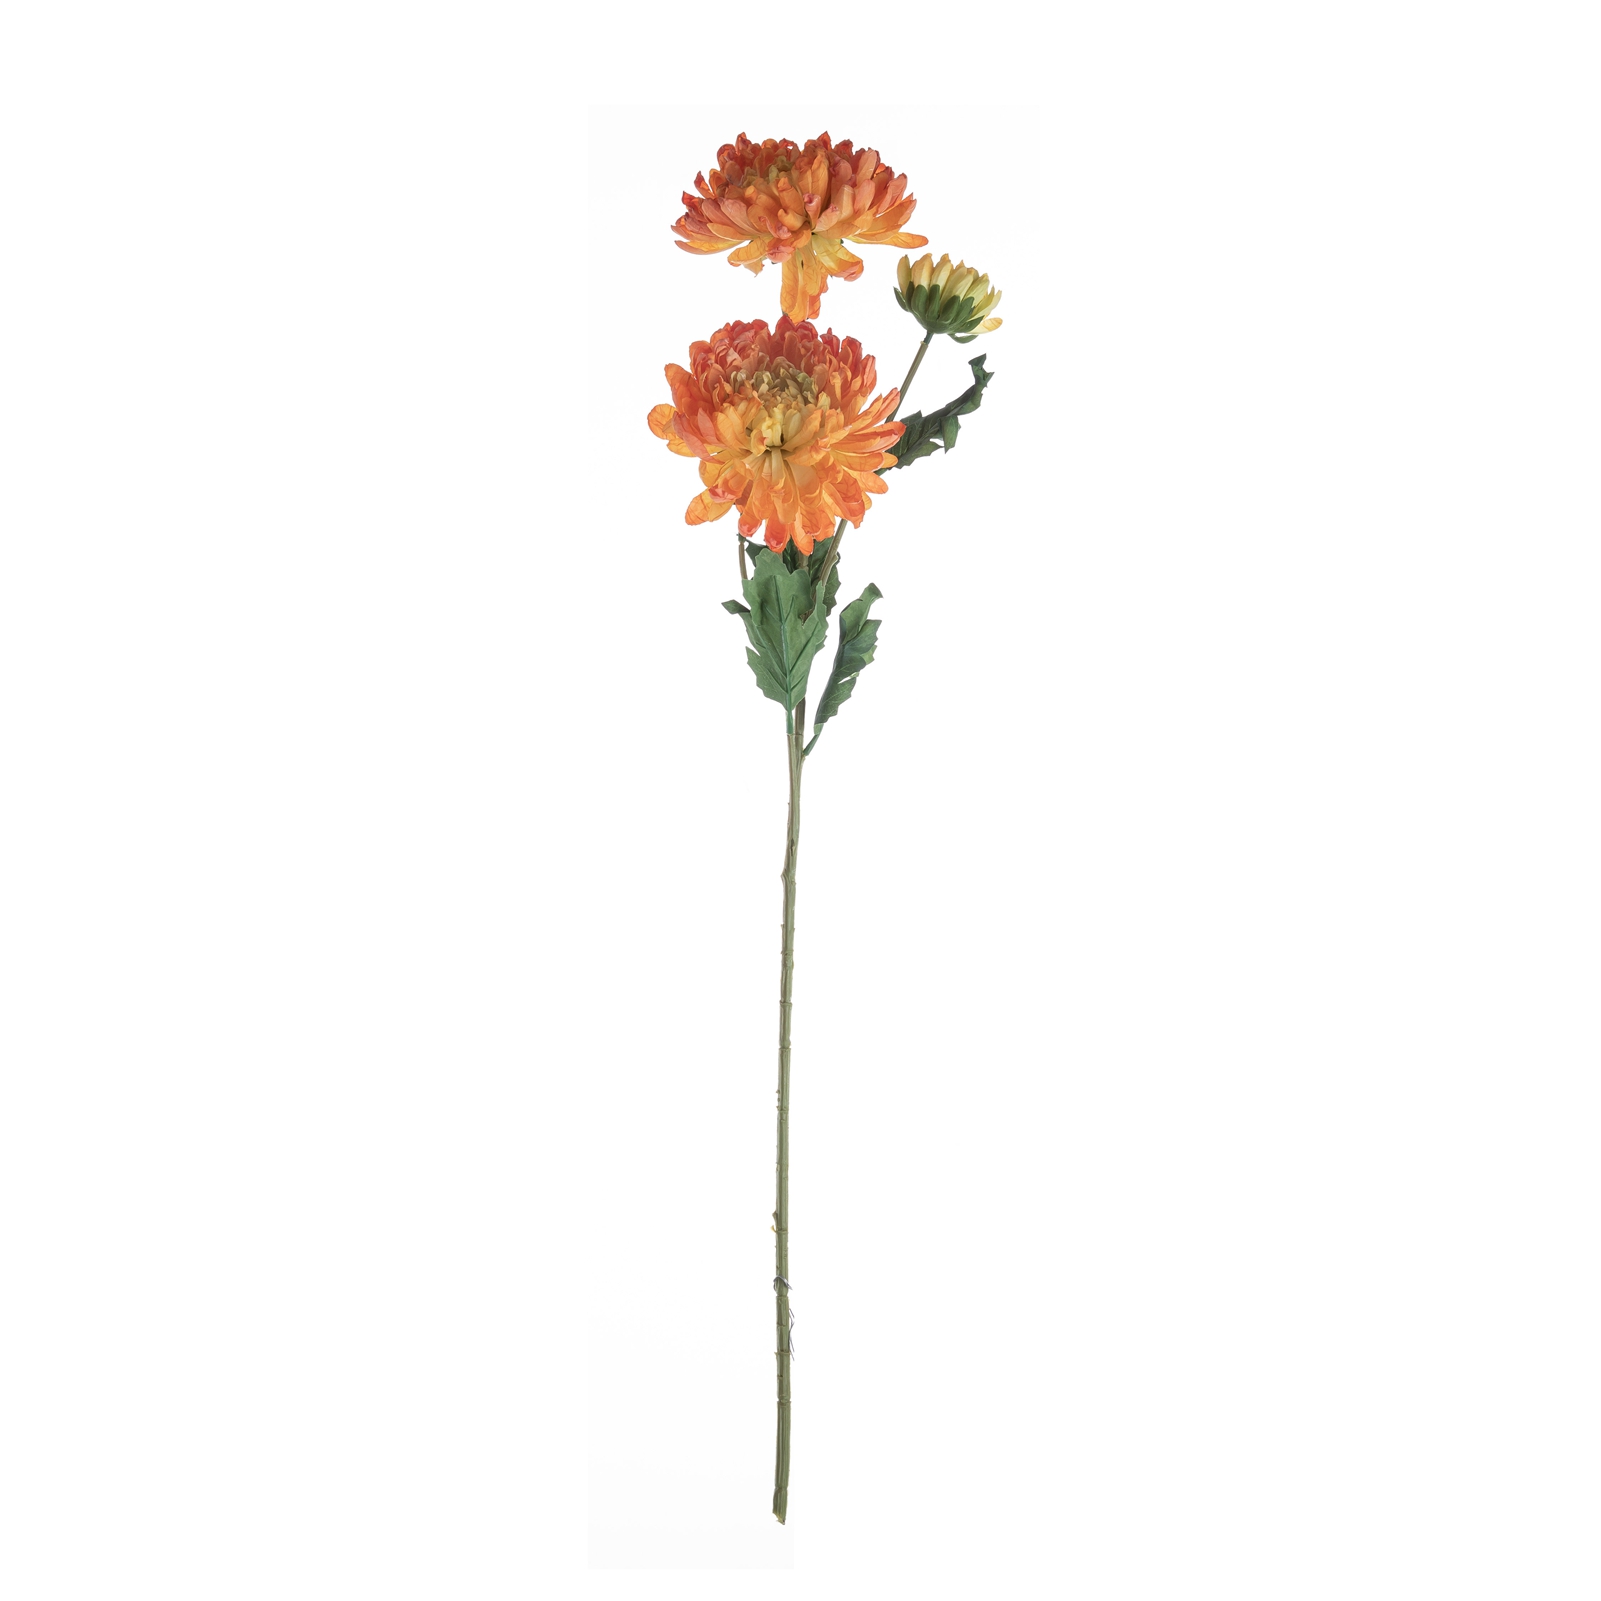 DY1-4727 Штучні квіти Хризантеми Фабрика прямих продажів Весільні постачання